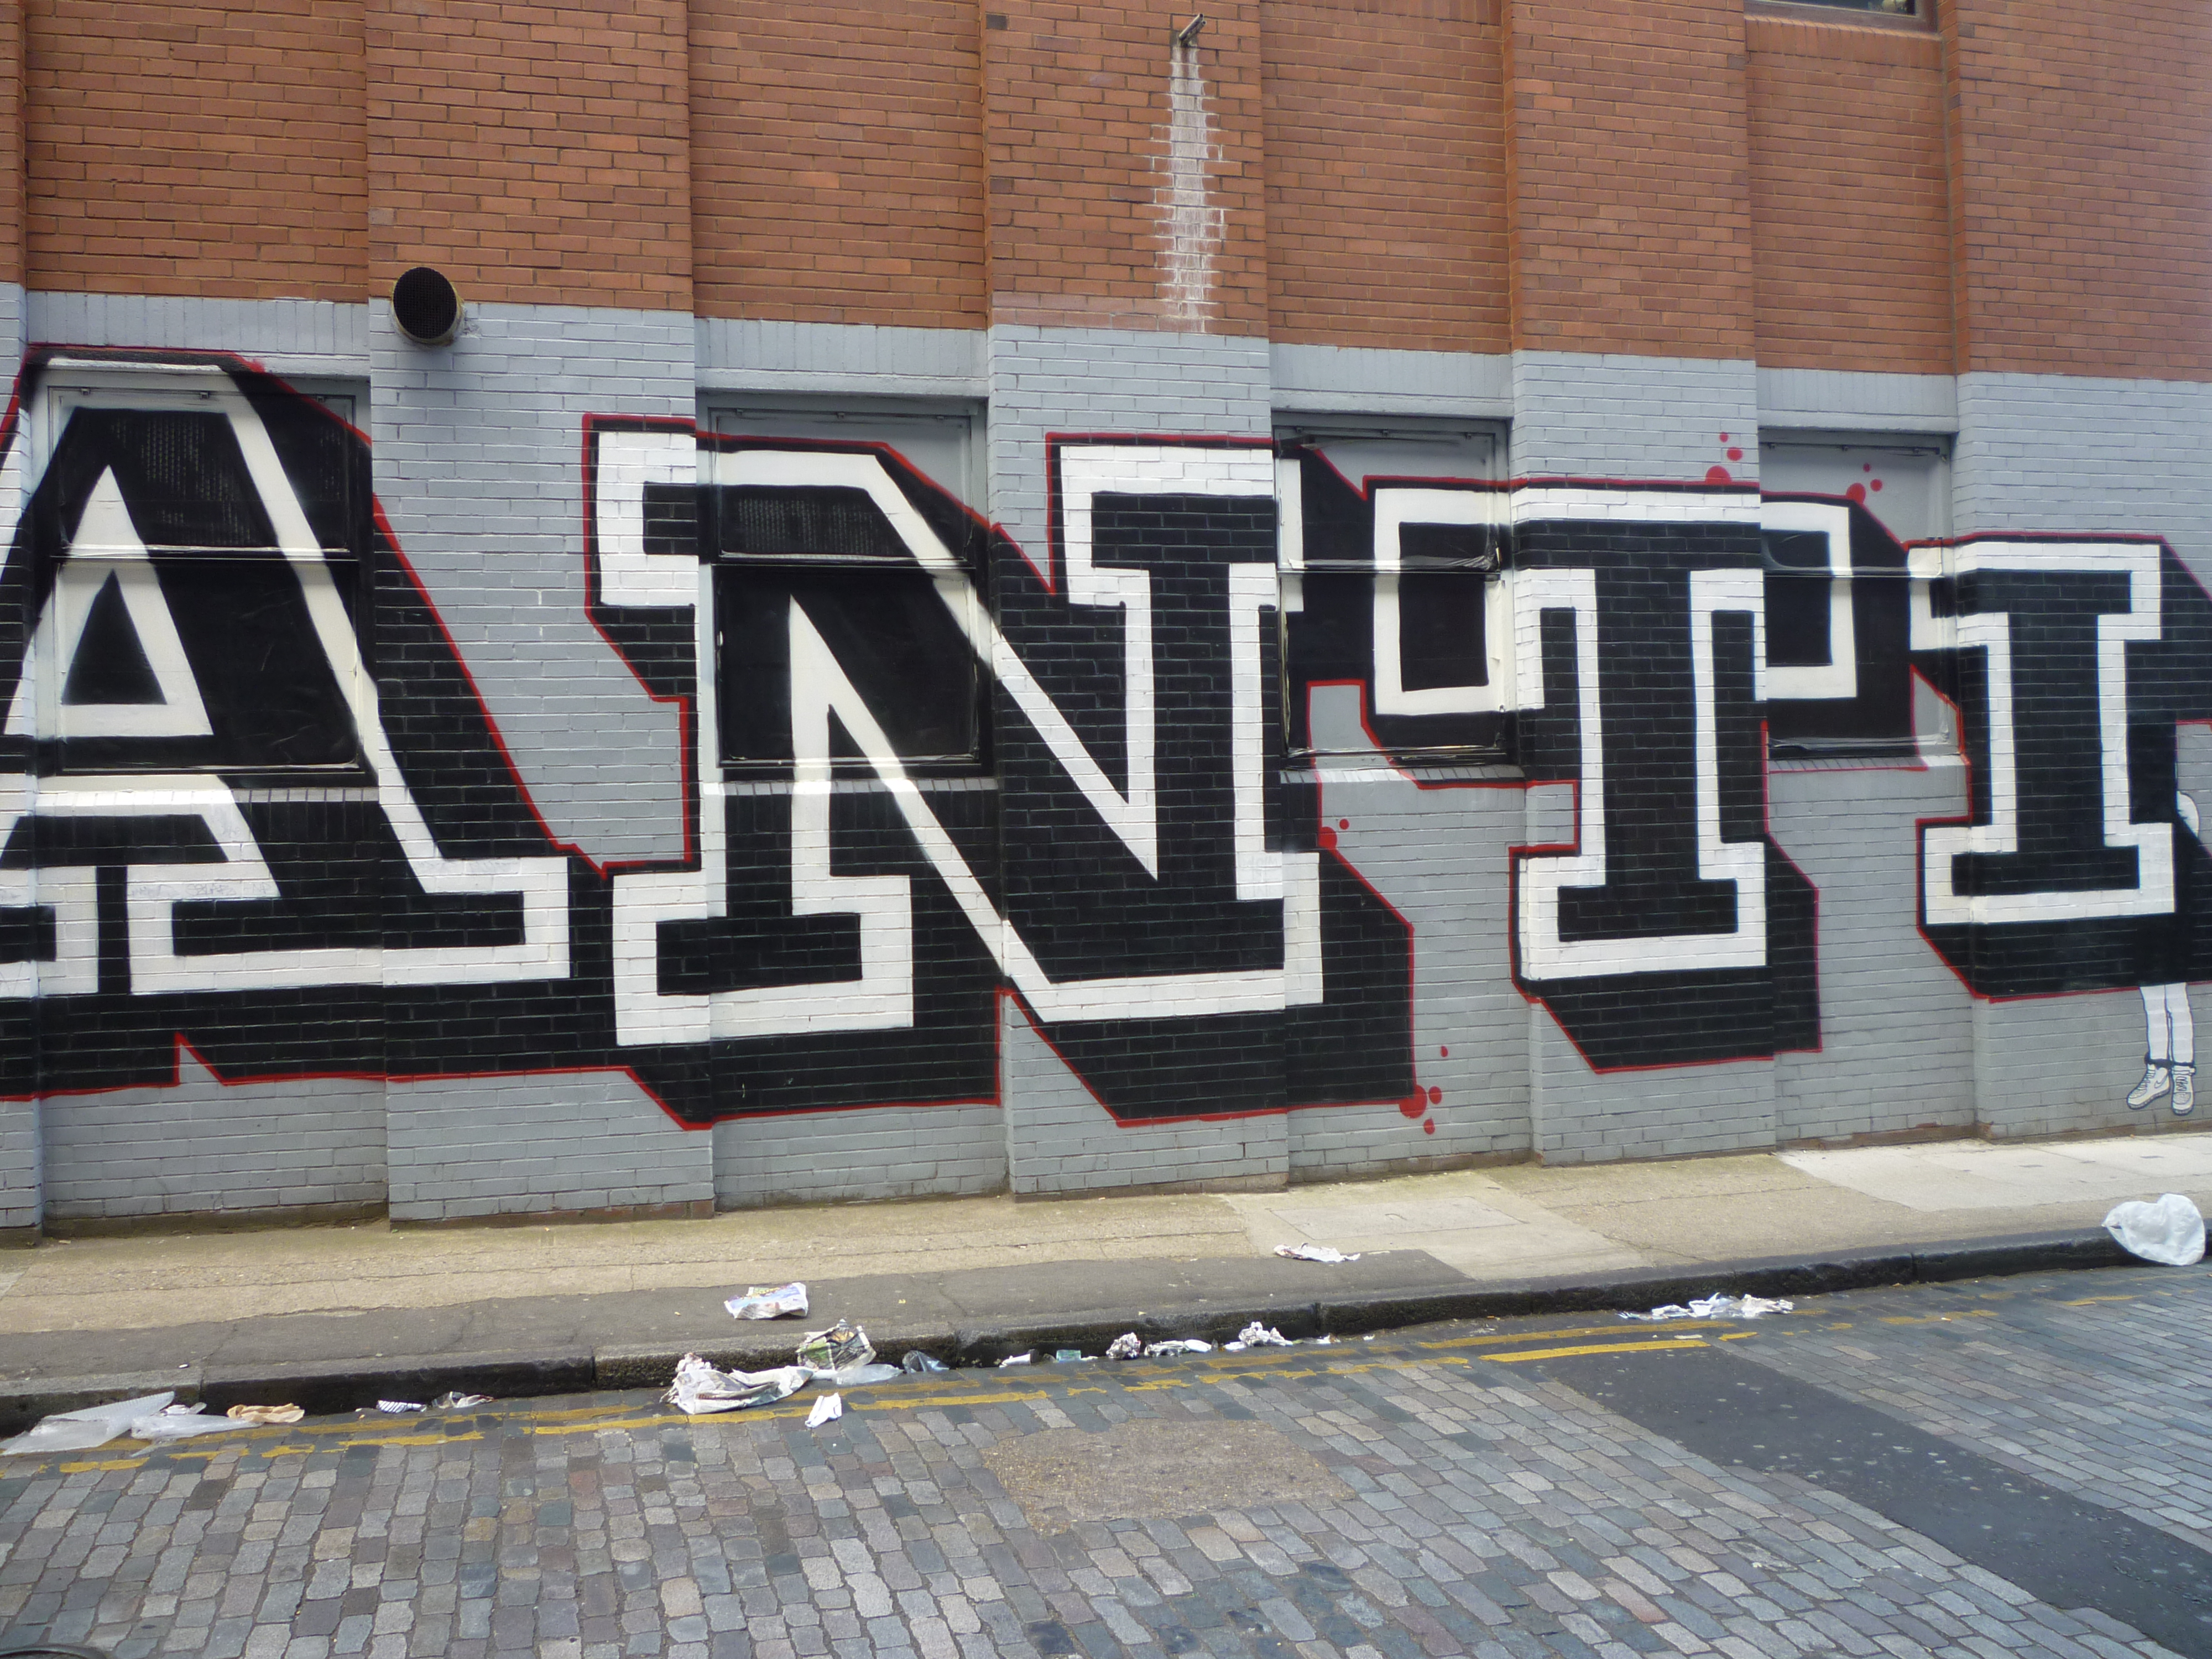 Street Art in London - Anti